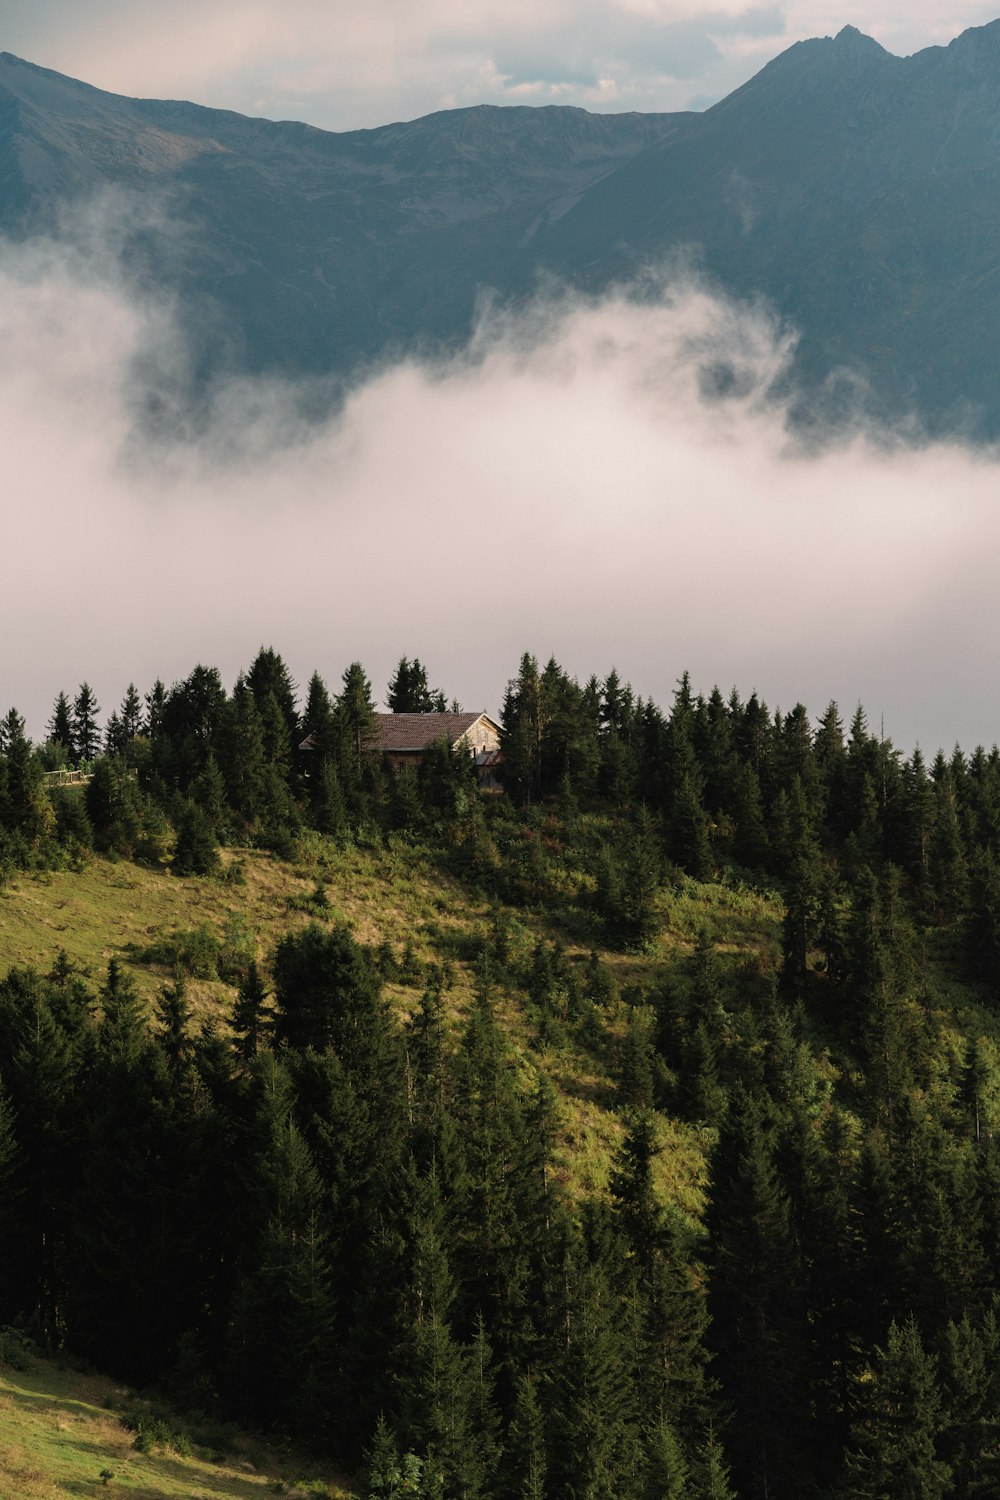 나무로 둘러싸인 언덕 꼭대기에 있는 집